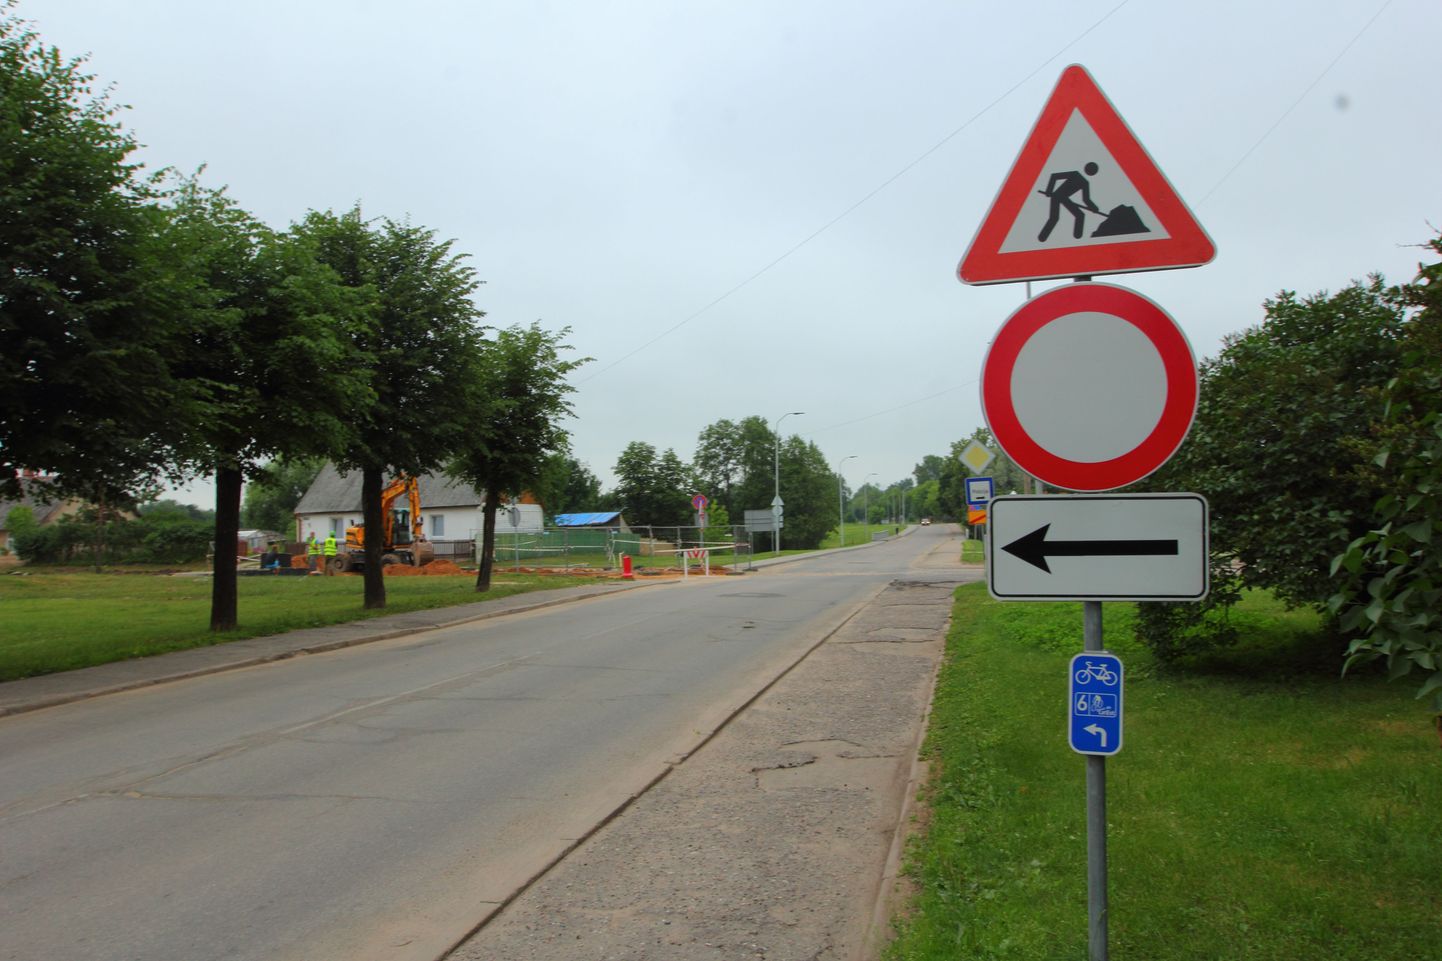 Keelumärk Rūjienas tänavas keelab keskusest tulijale vasakule ehk Ausekļa tänavasse sõitmist.